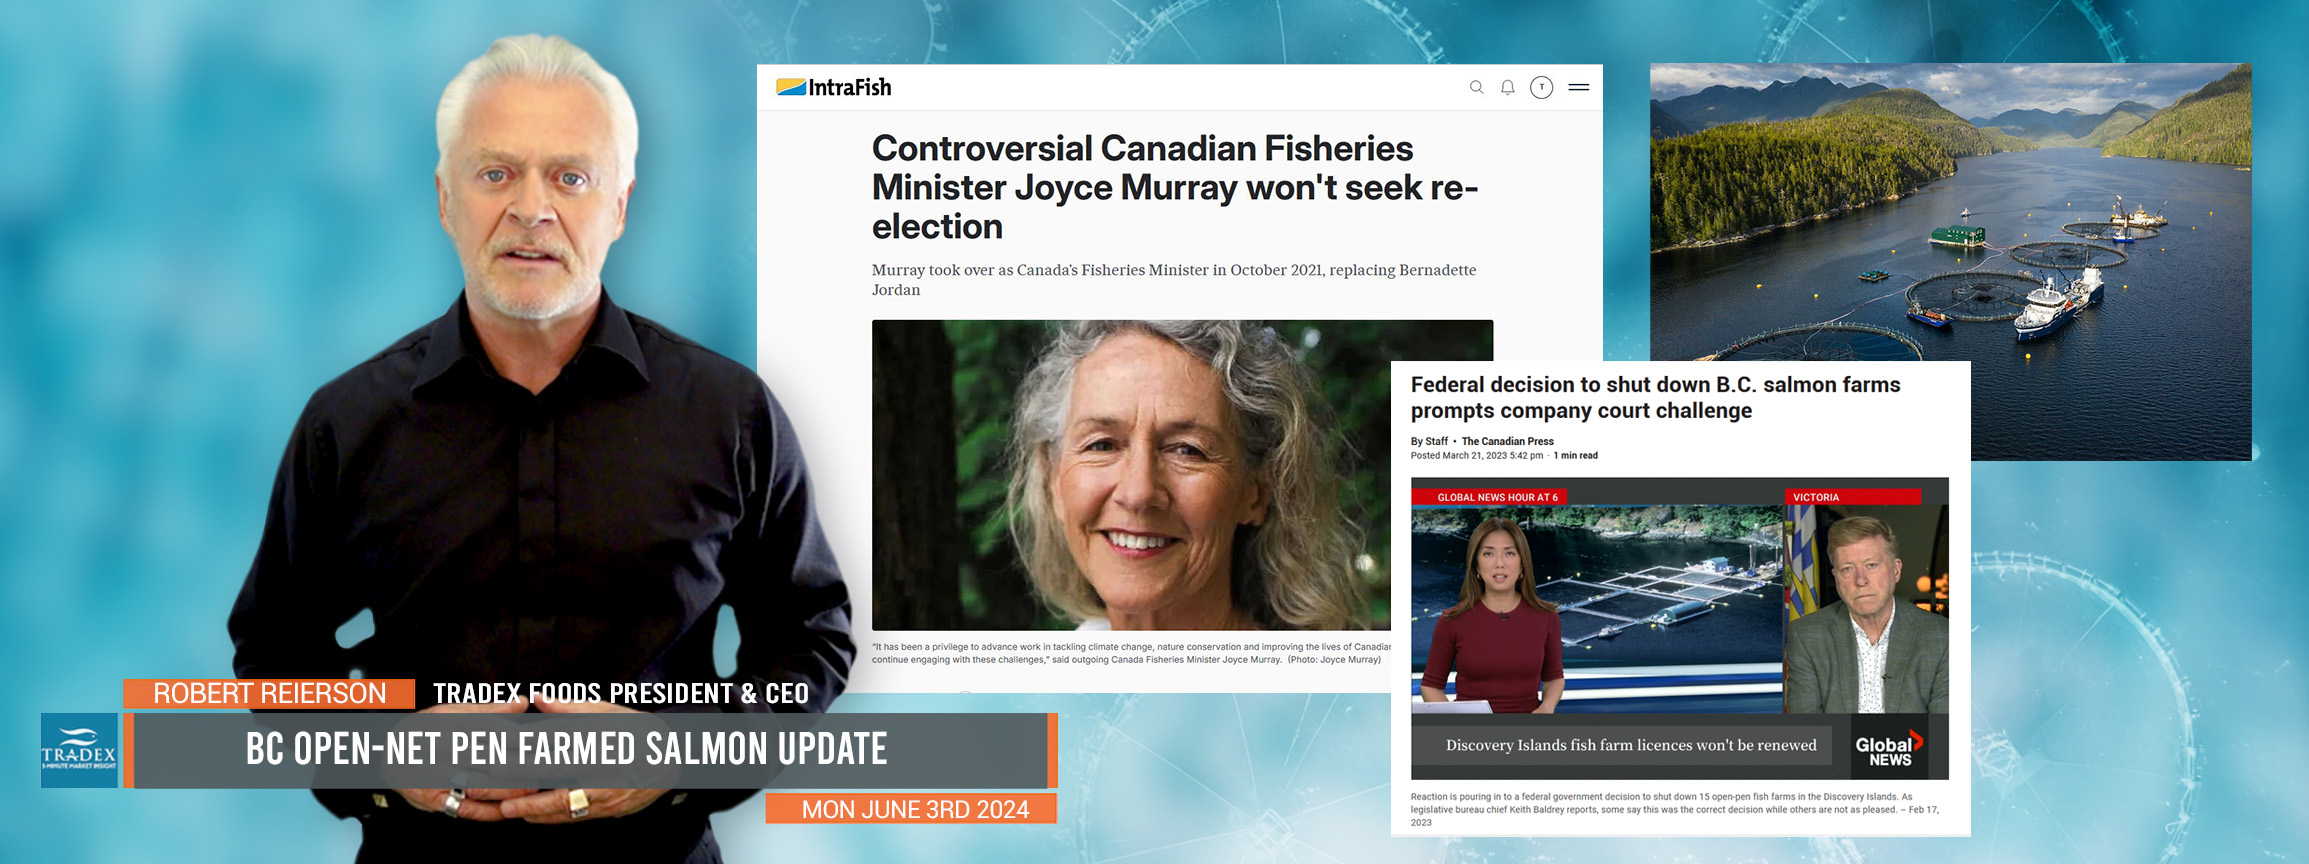 B.C. Open-net Pen Farmed Salmon Update: Trudeau Dilemma, DFO Integrity Investigation